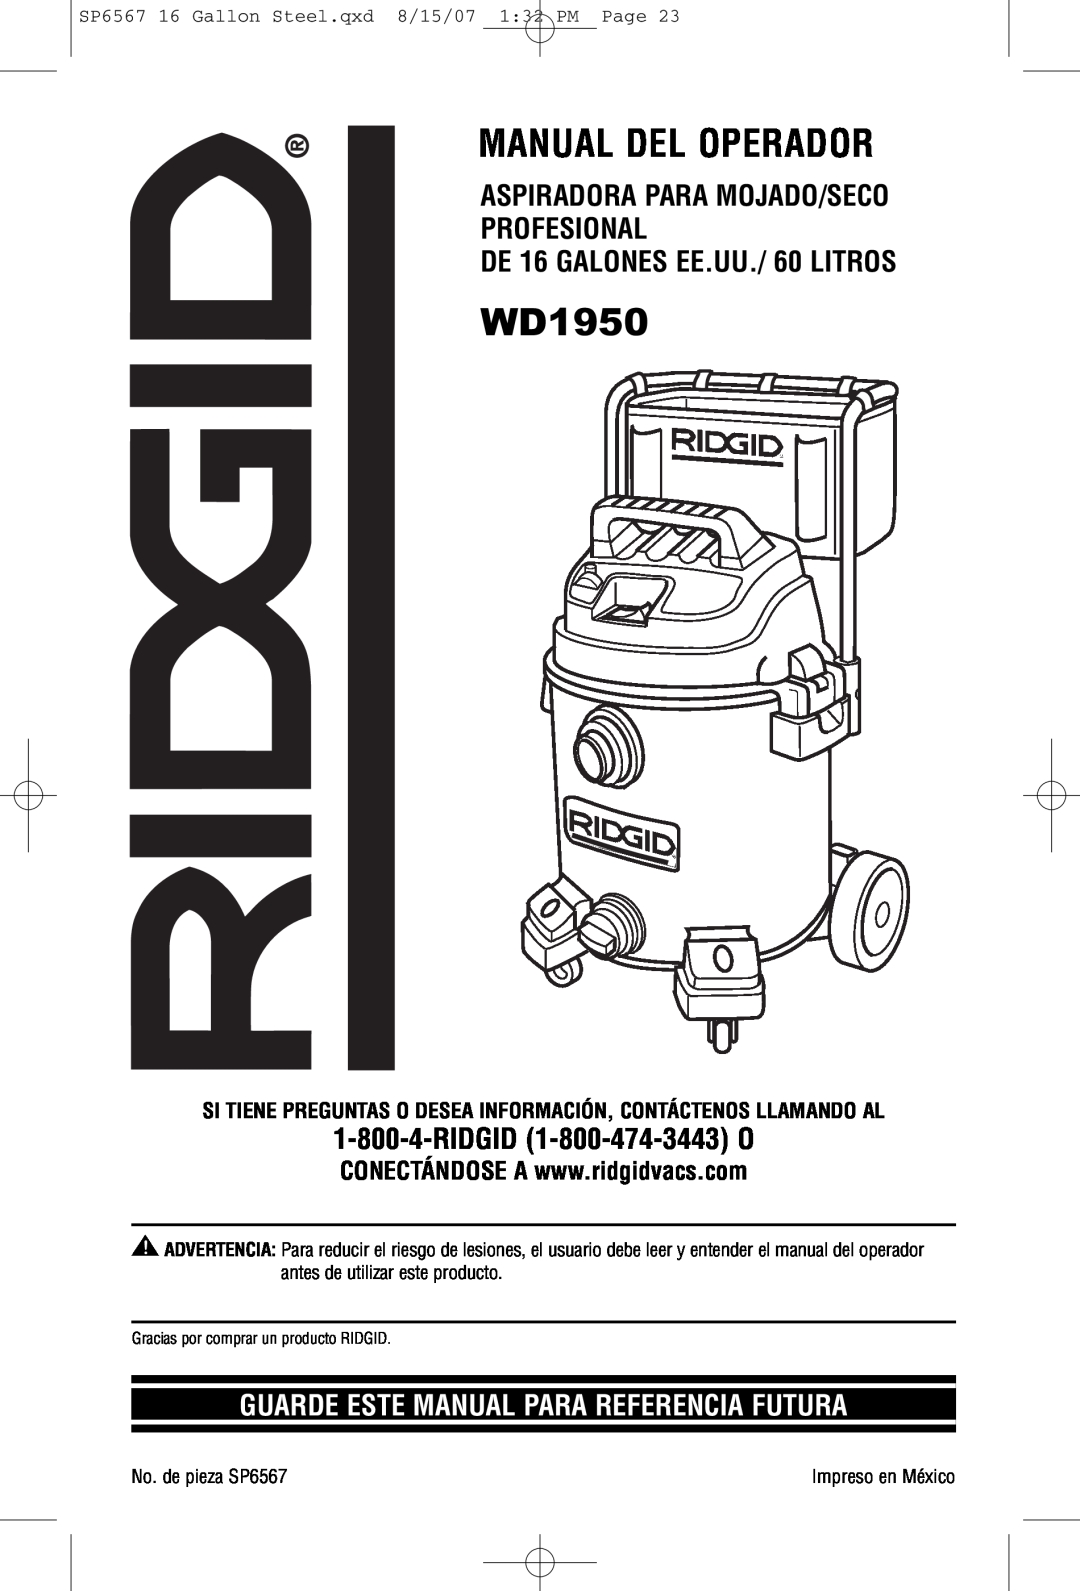 RIDGID WD1950 manual Manual Del Operador, Aspiradora Para Mojado/Seco Profesional, DE 16 GALONES EE.UU./ 60 LITROS 